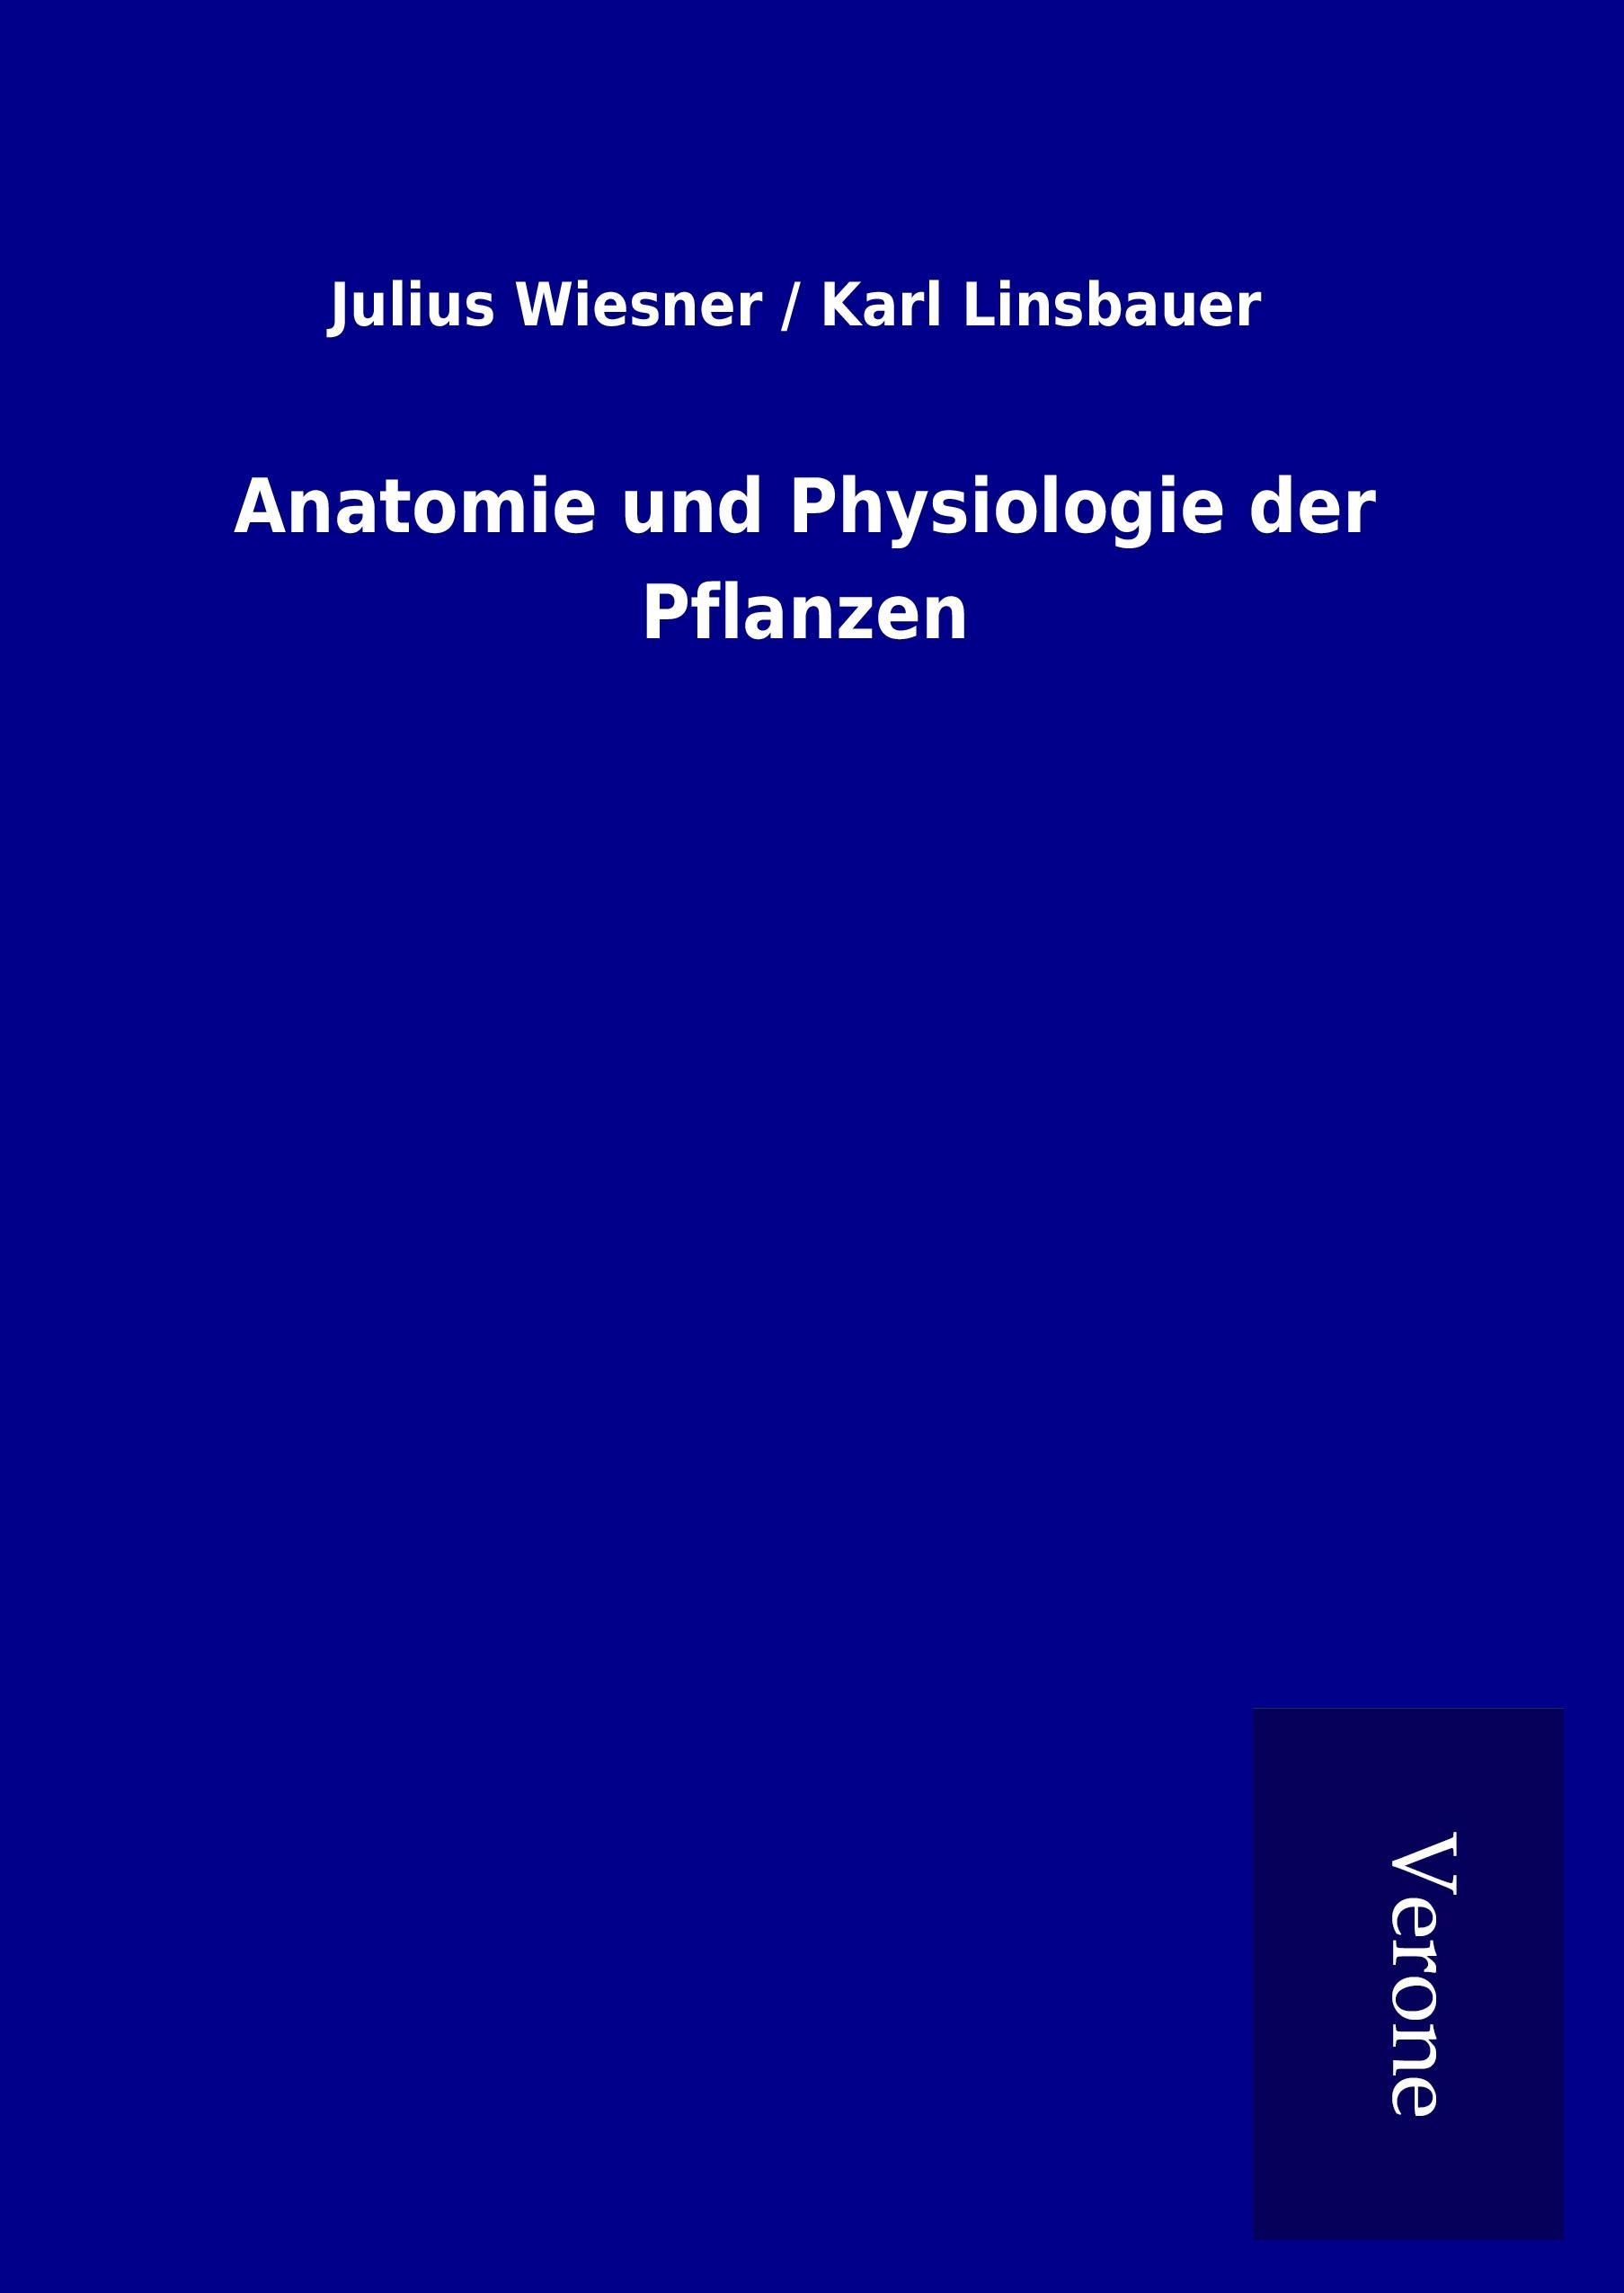 Anatomie und Physiologie der Pflanzen - Wiesner, Julius   Linsbauer, Karl